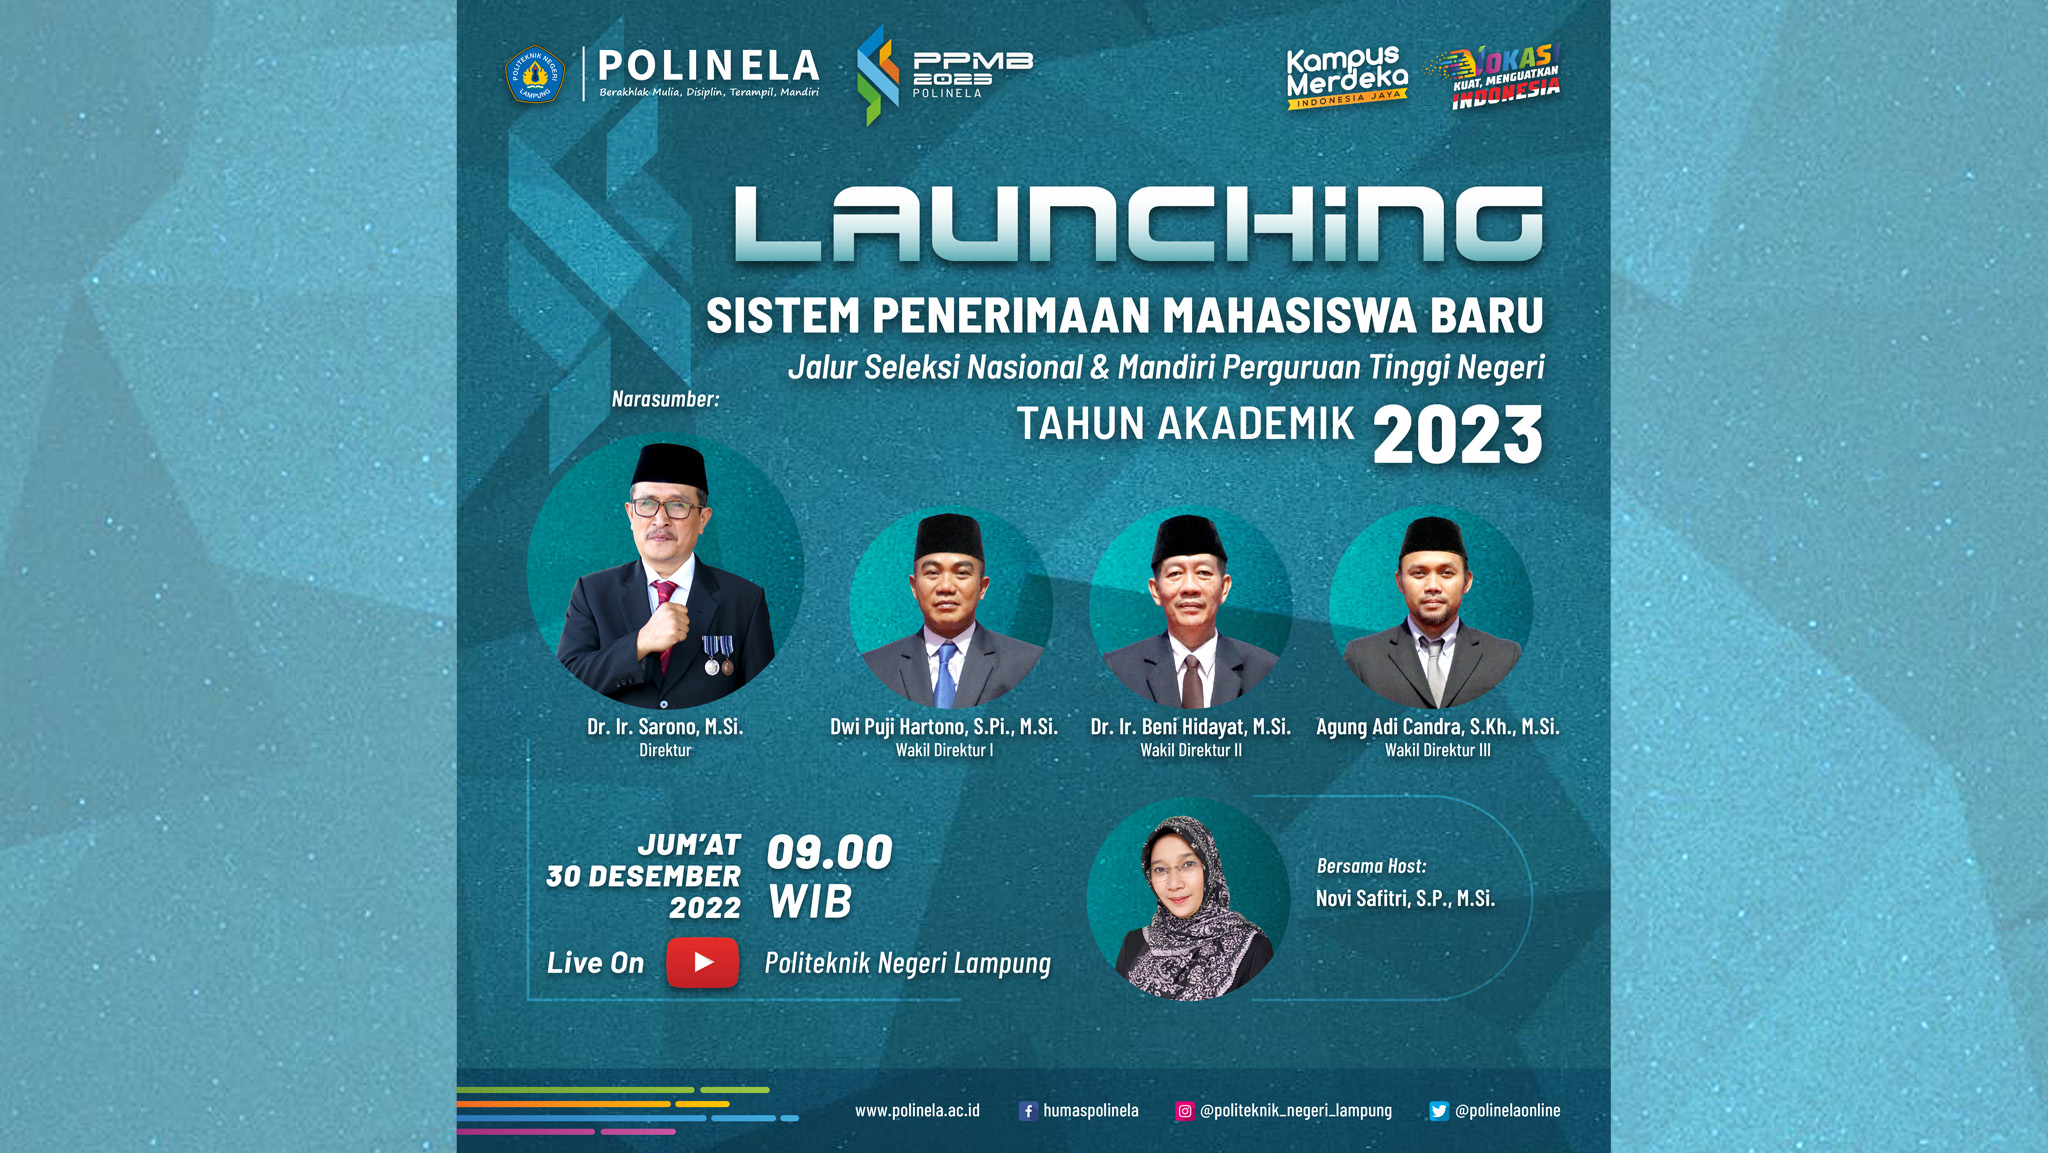 Live Streaming Launching Sistem Penerimaan Mahasiswa Baru Politeknik Negeri Lampung jalur seleksi nasional dan seleksi mandiri tahun 2023